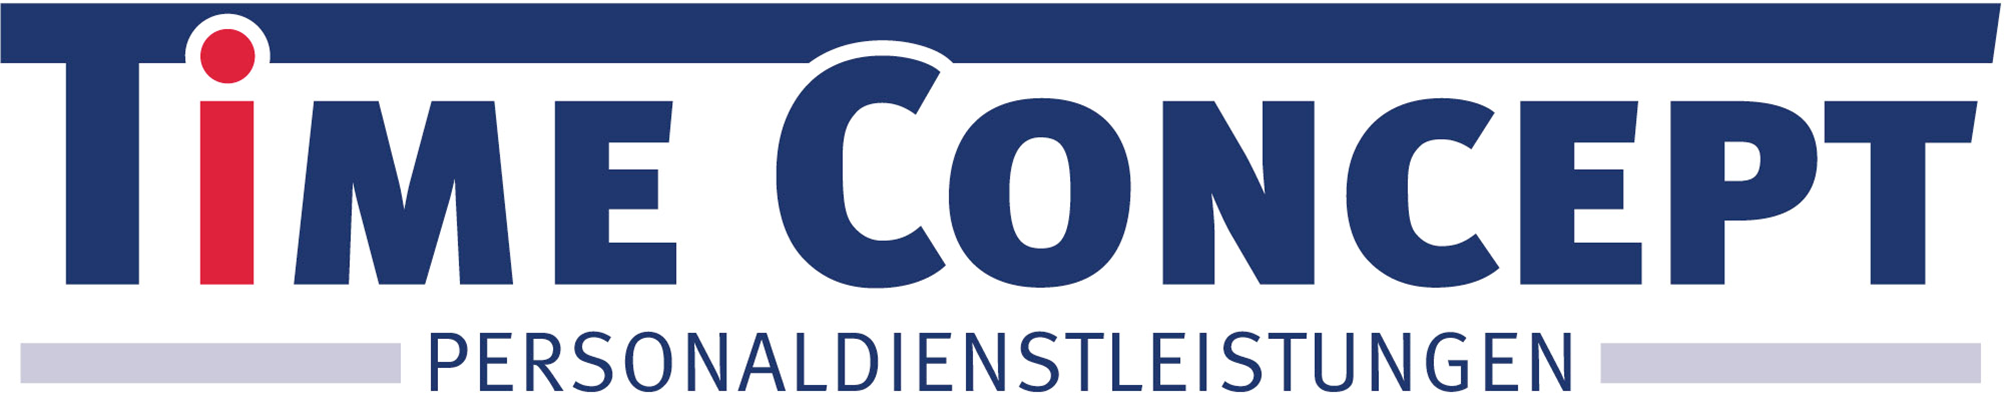 Logo TiME CONCEPT Personaldienstleistungen GmbH